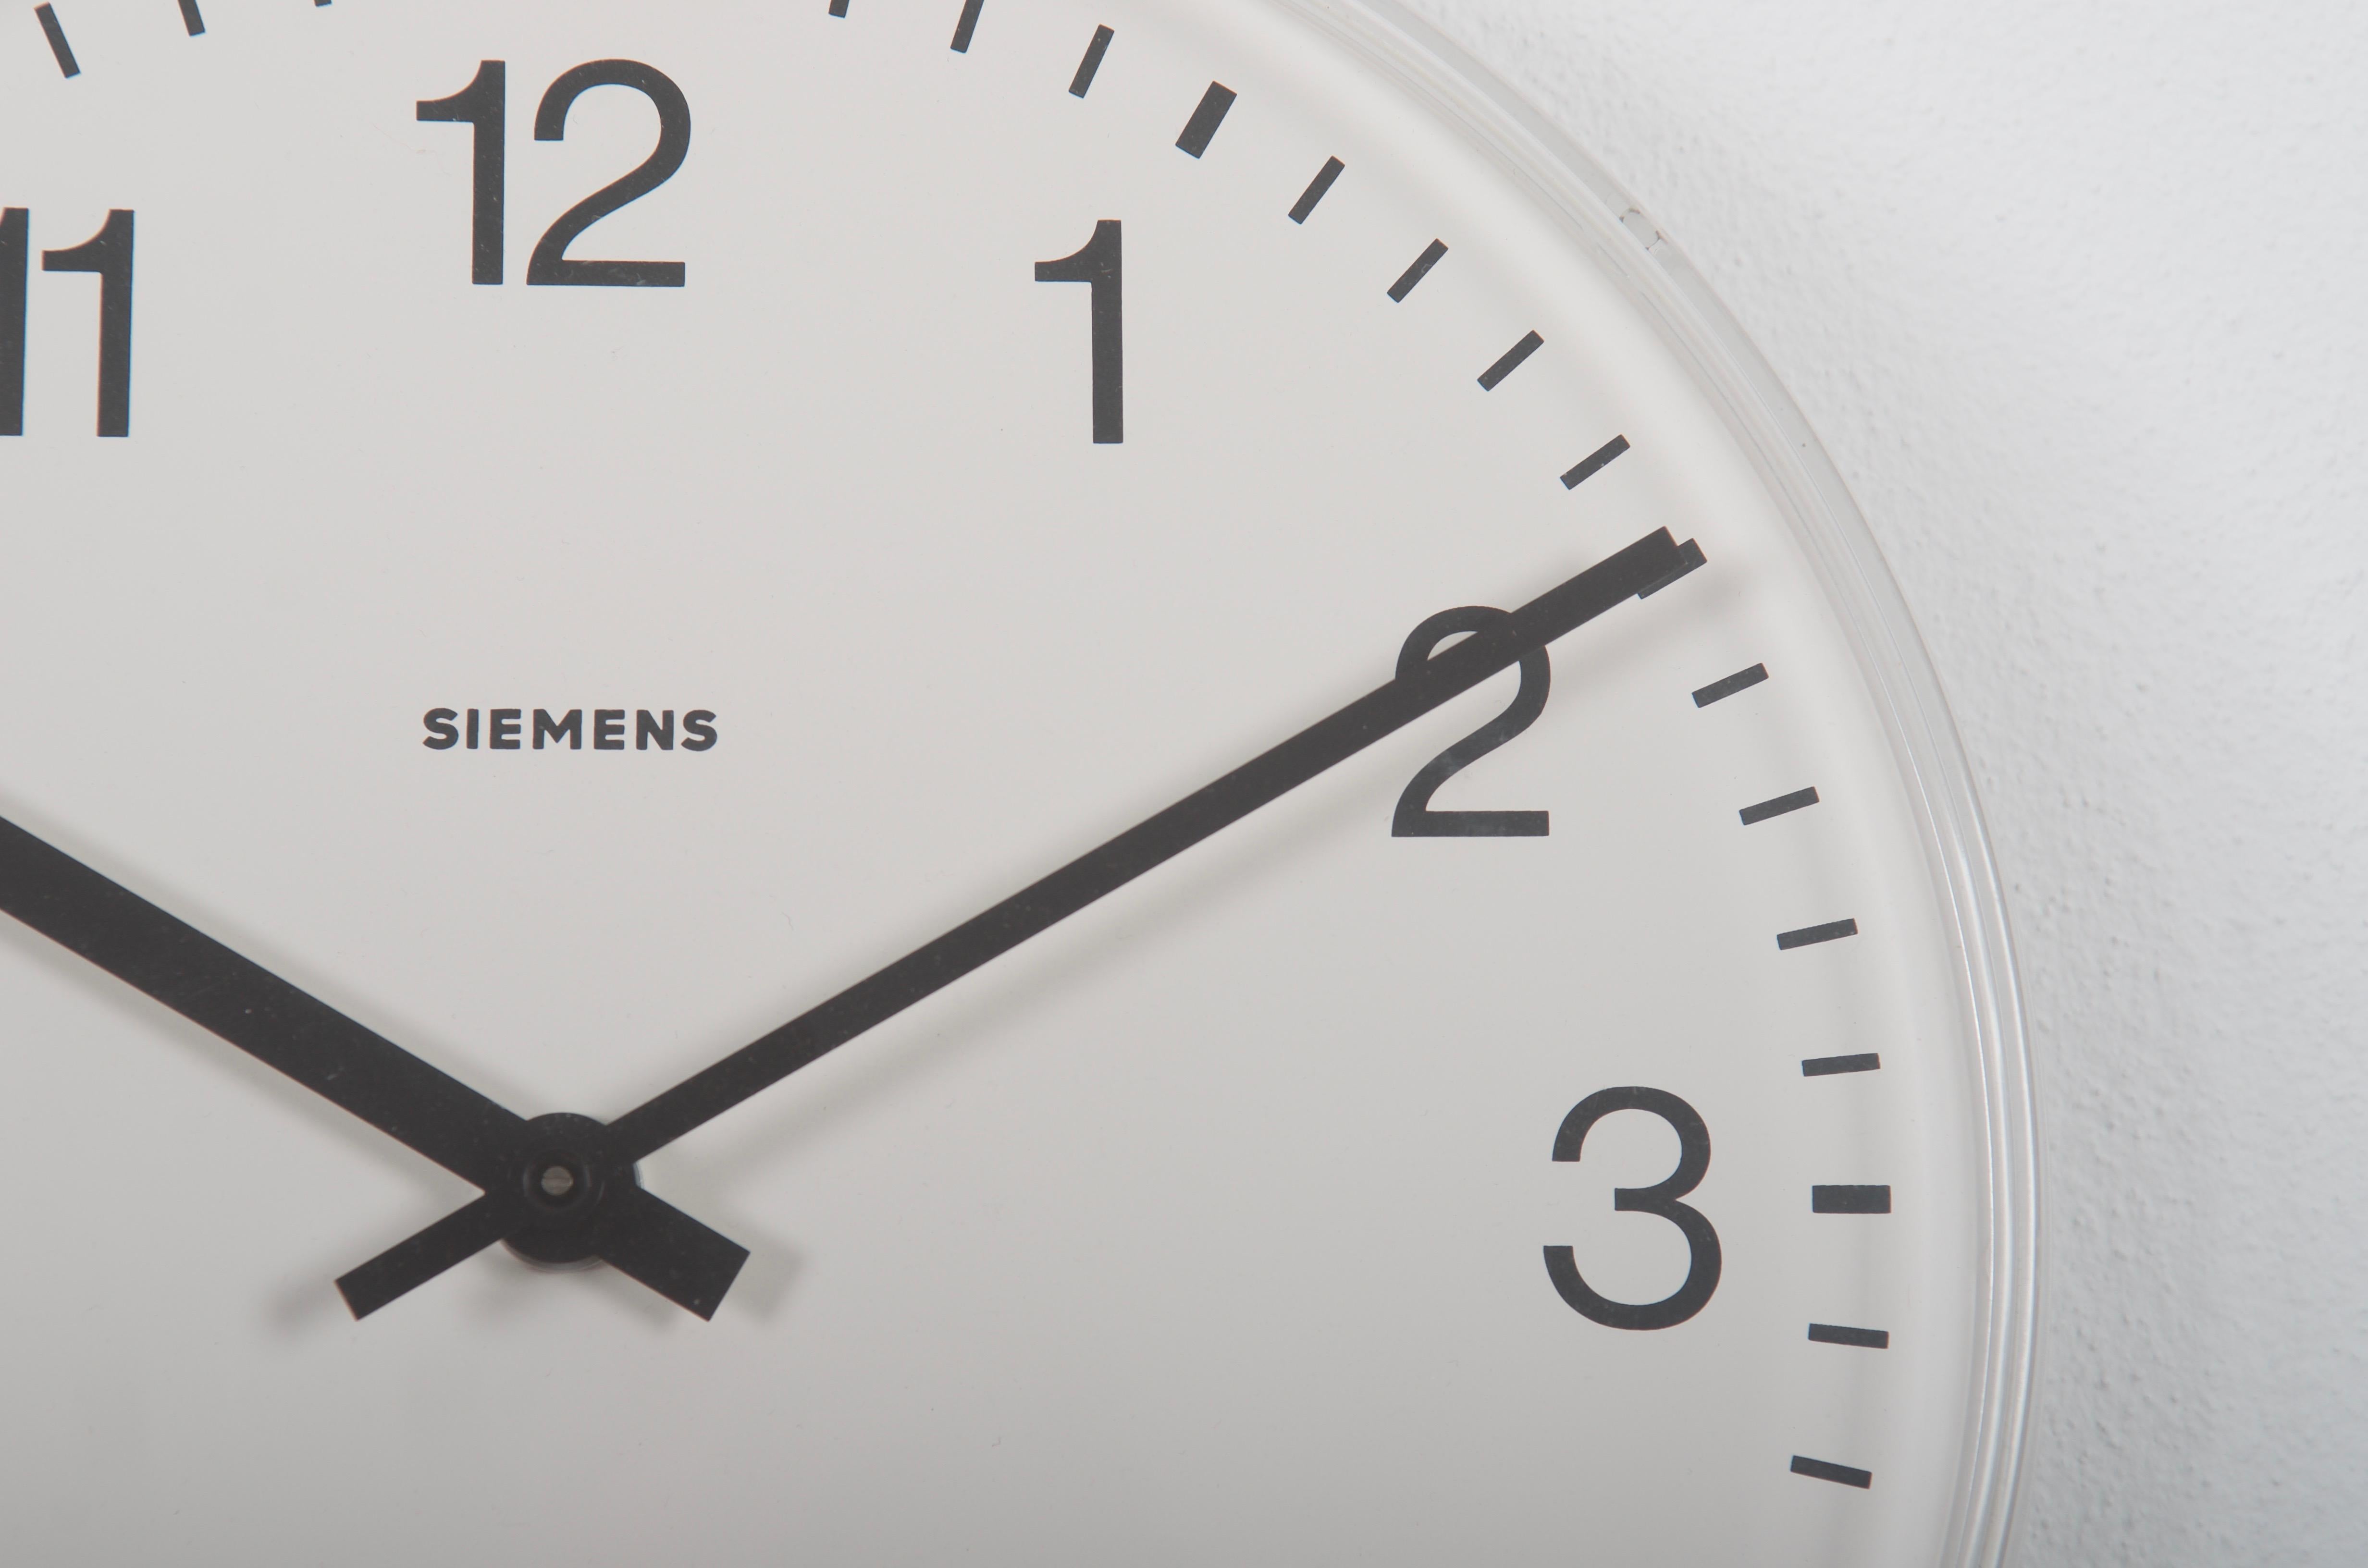 Horloge de gare allemande de Siemens datant de la fin des années 1970.
Anciennement horloge d'esclave à mouvement mécanique, elle est aujourd'hui équipée d'un mouvement à quartz moderne avec batterie.
Cadre en plastique avec façade en verre